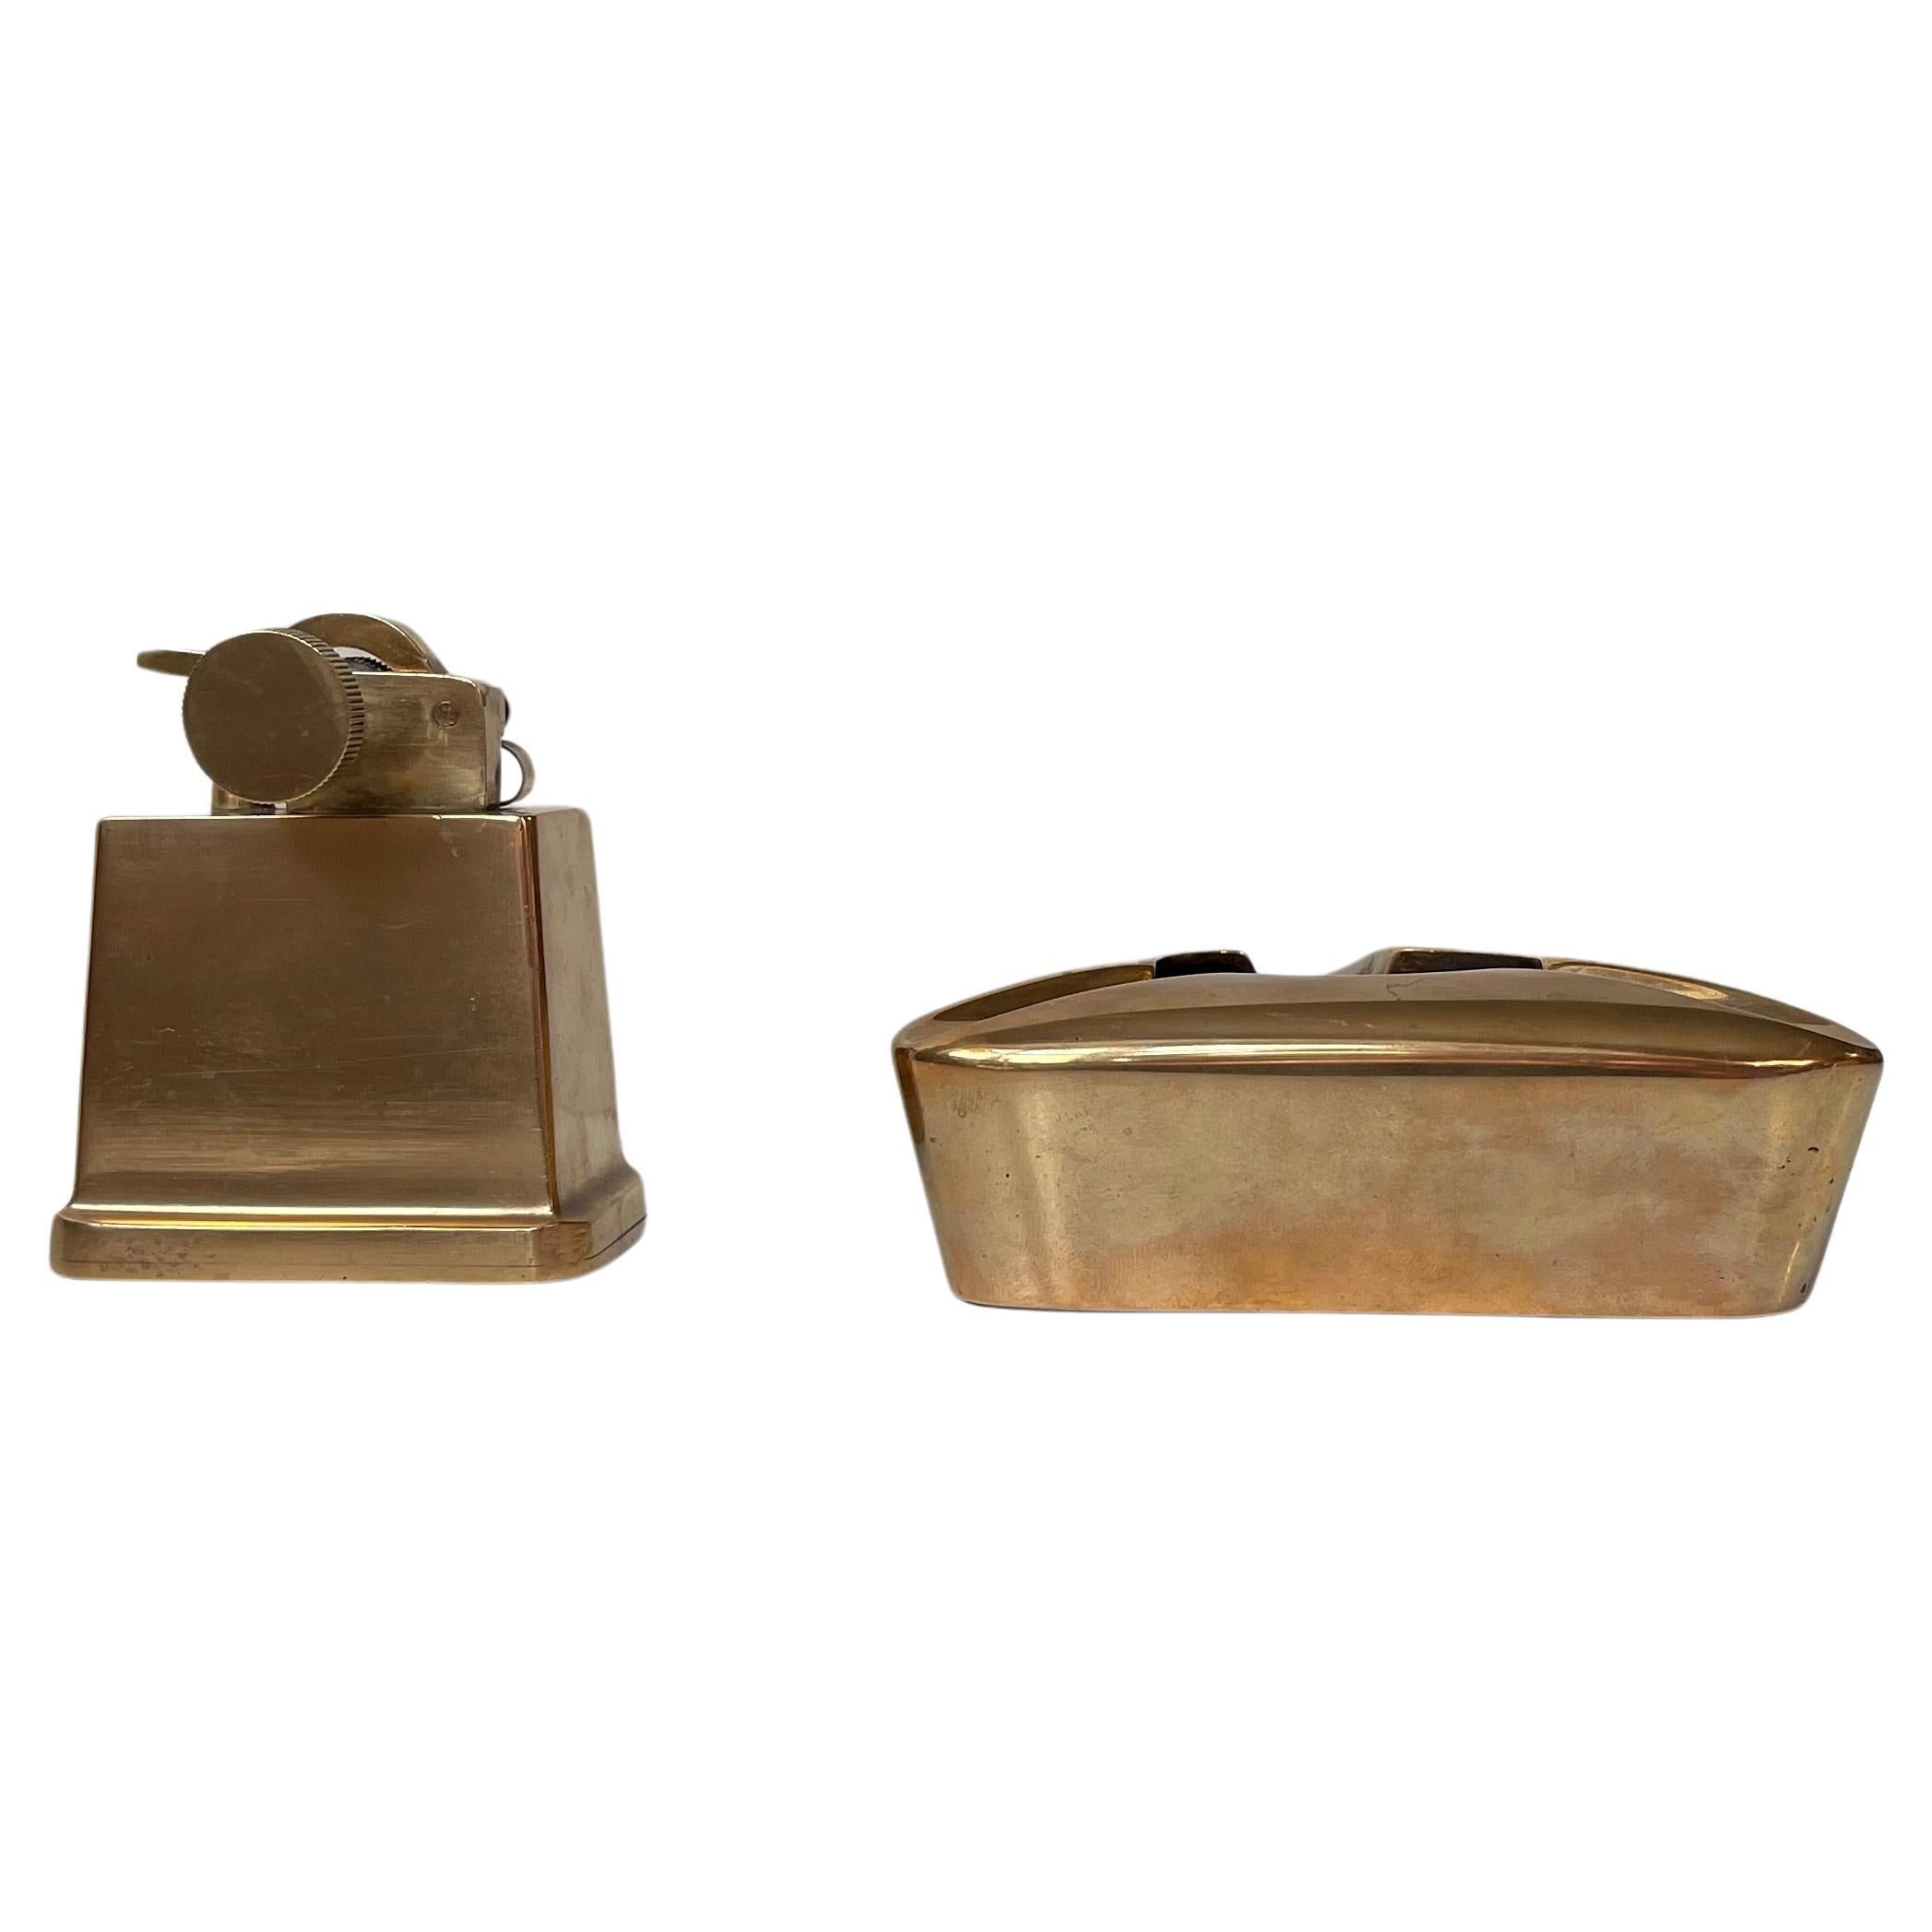 Tinos Art Deco Zigarren-Tischleuchter und Aschenbecher aus Bronze in Bronze, 1930er Jahre